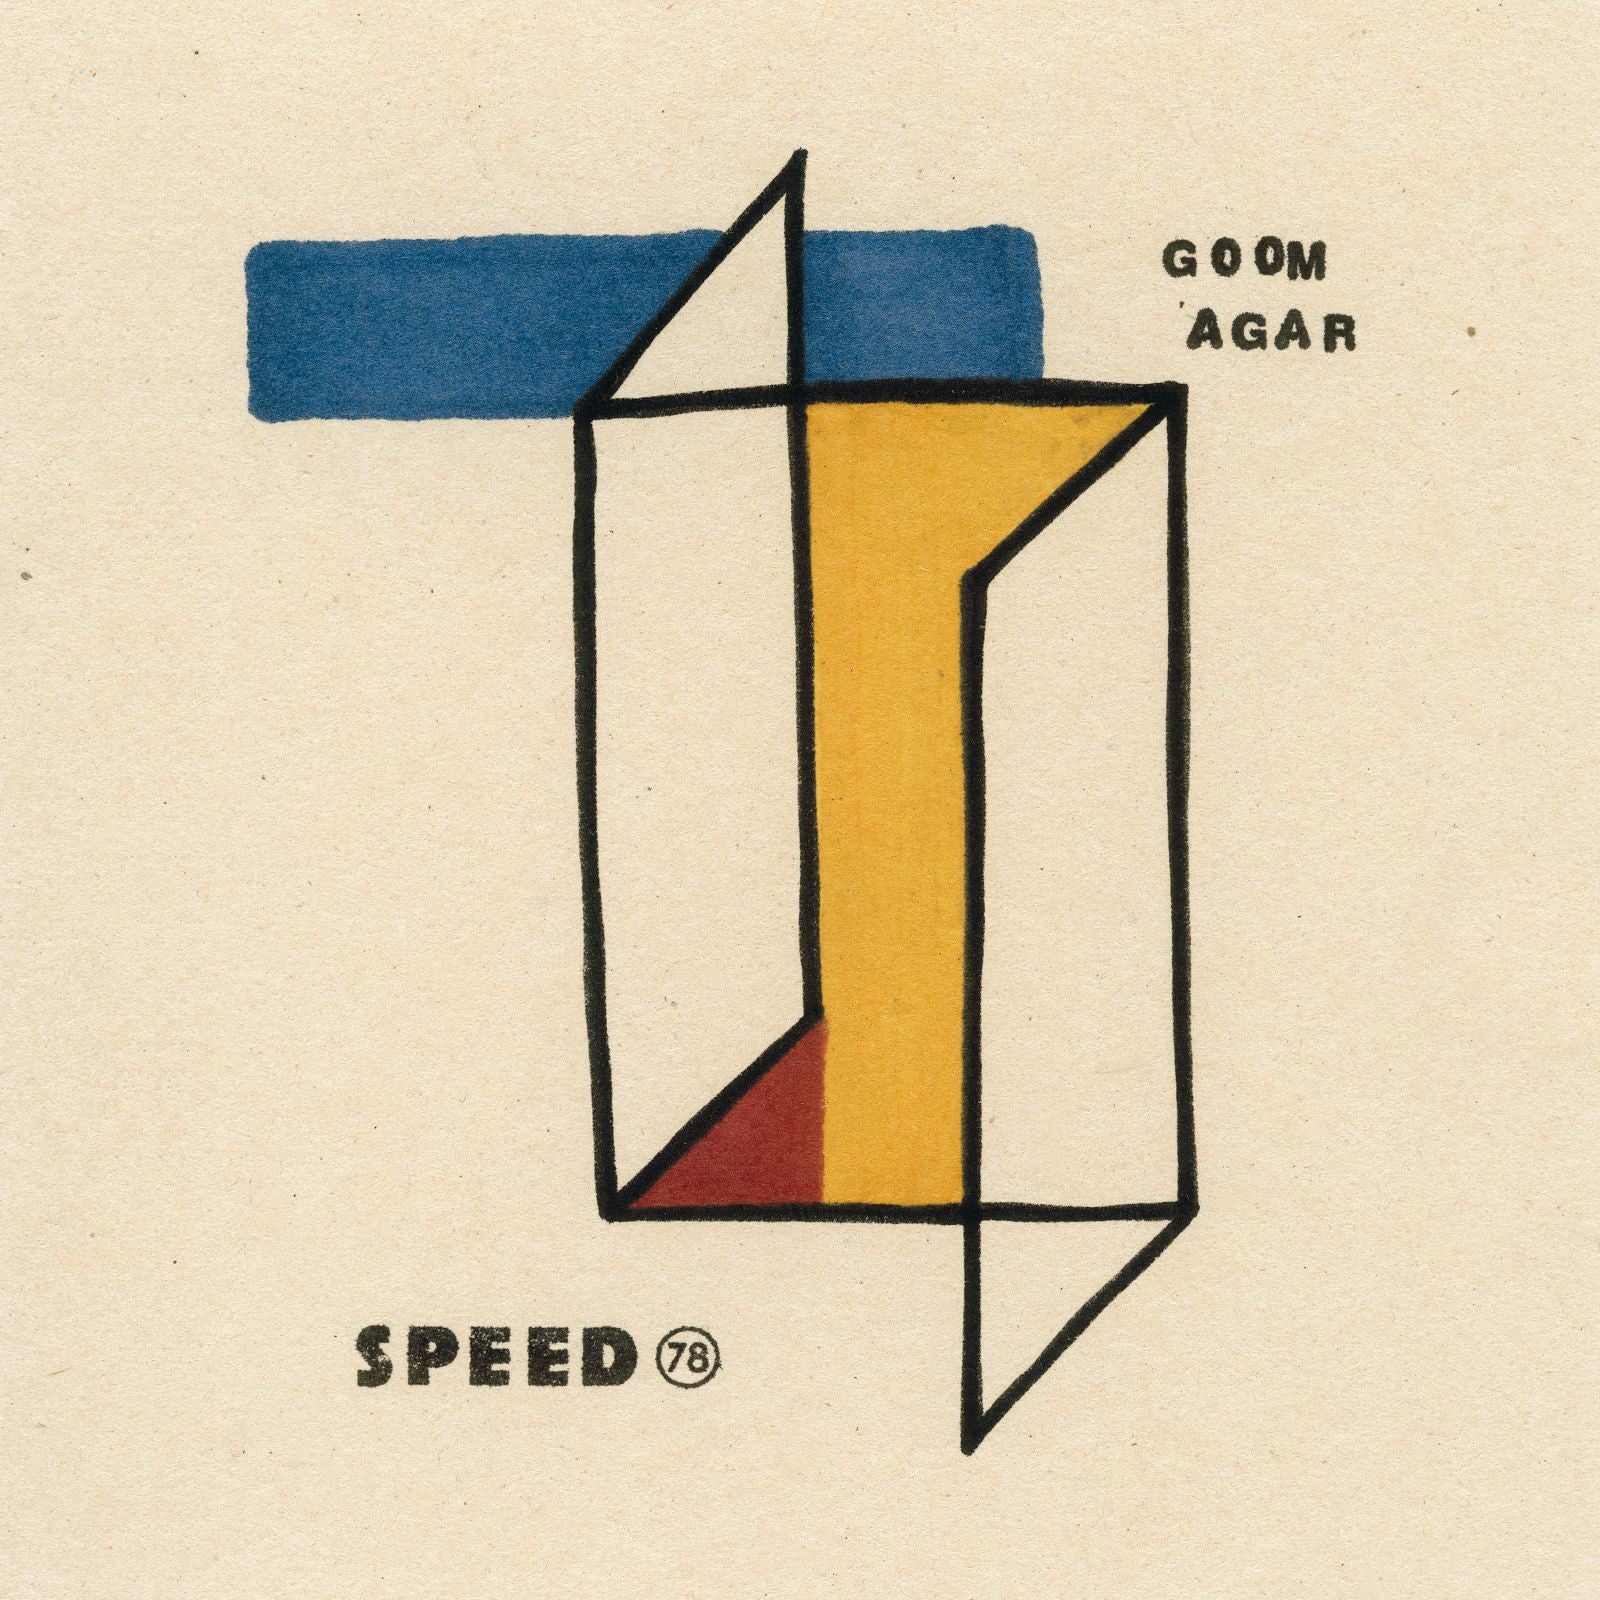 Speed 78 - Goom Agar